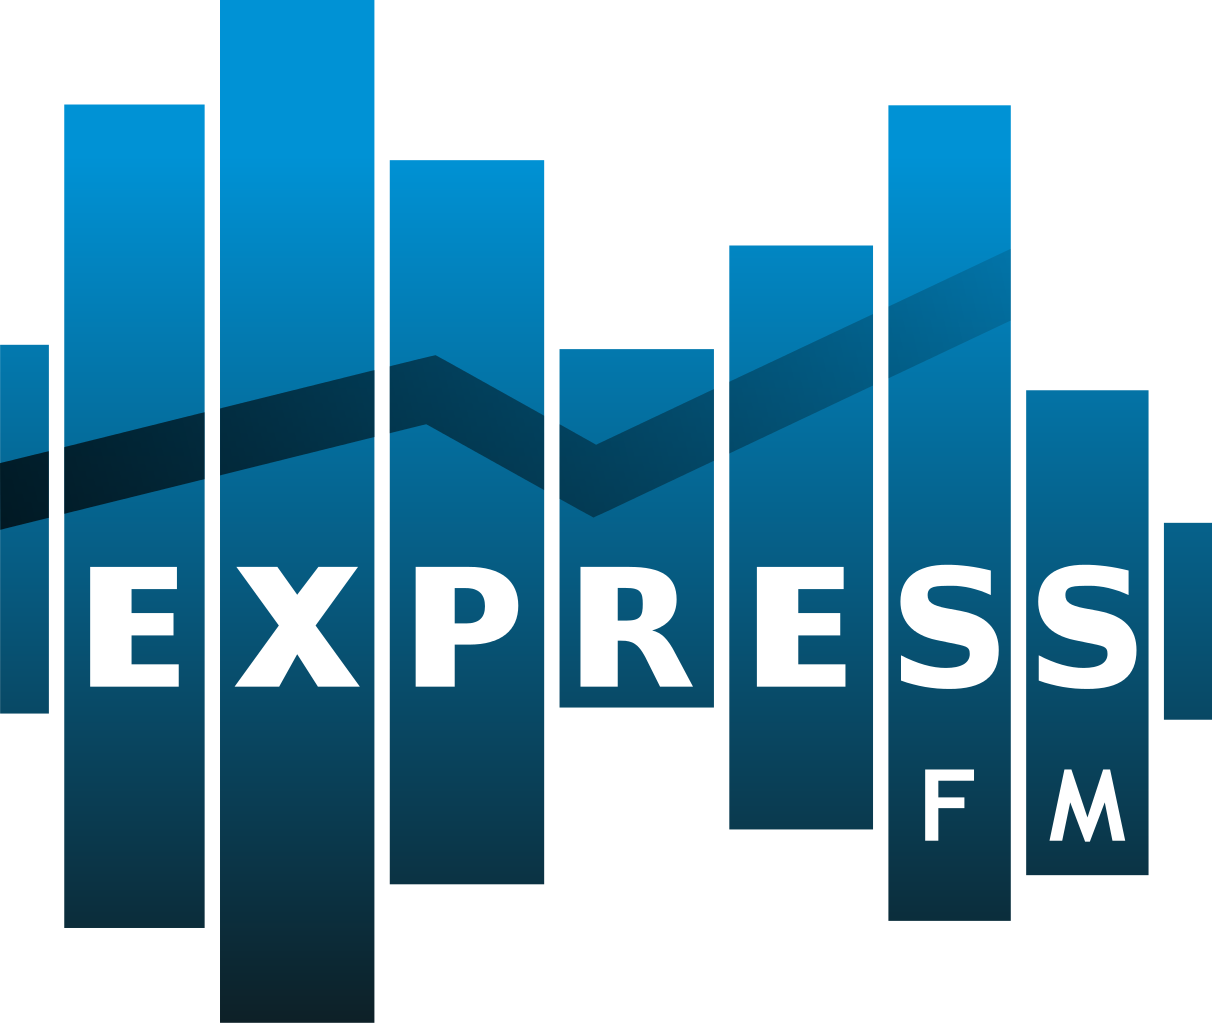 Express Fm